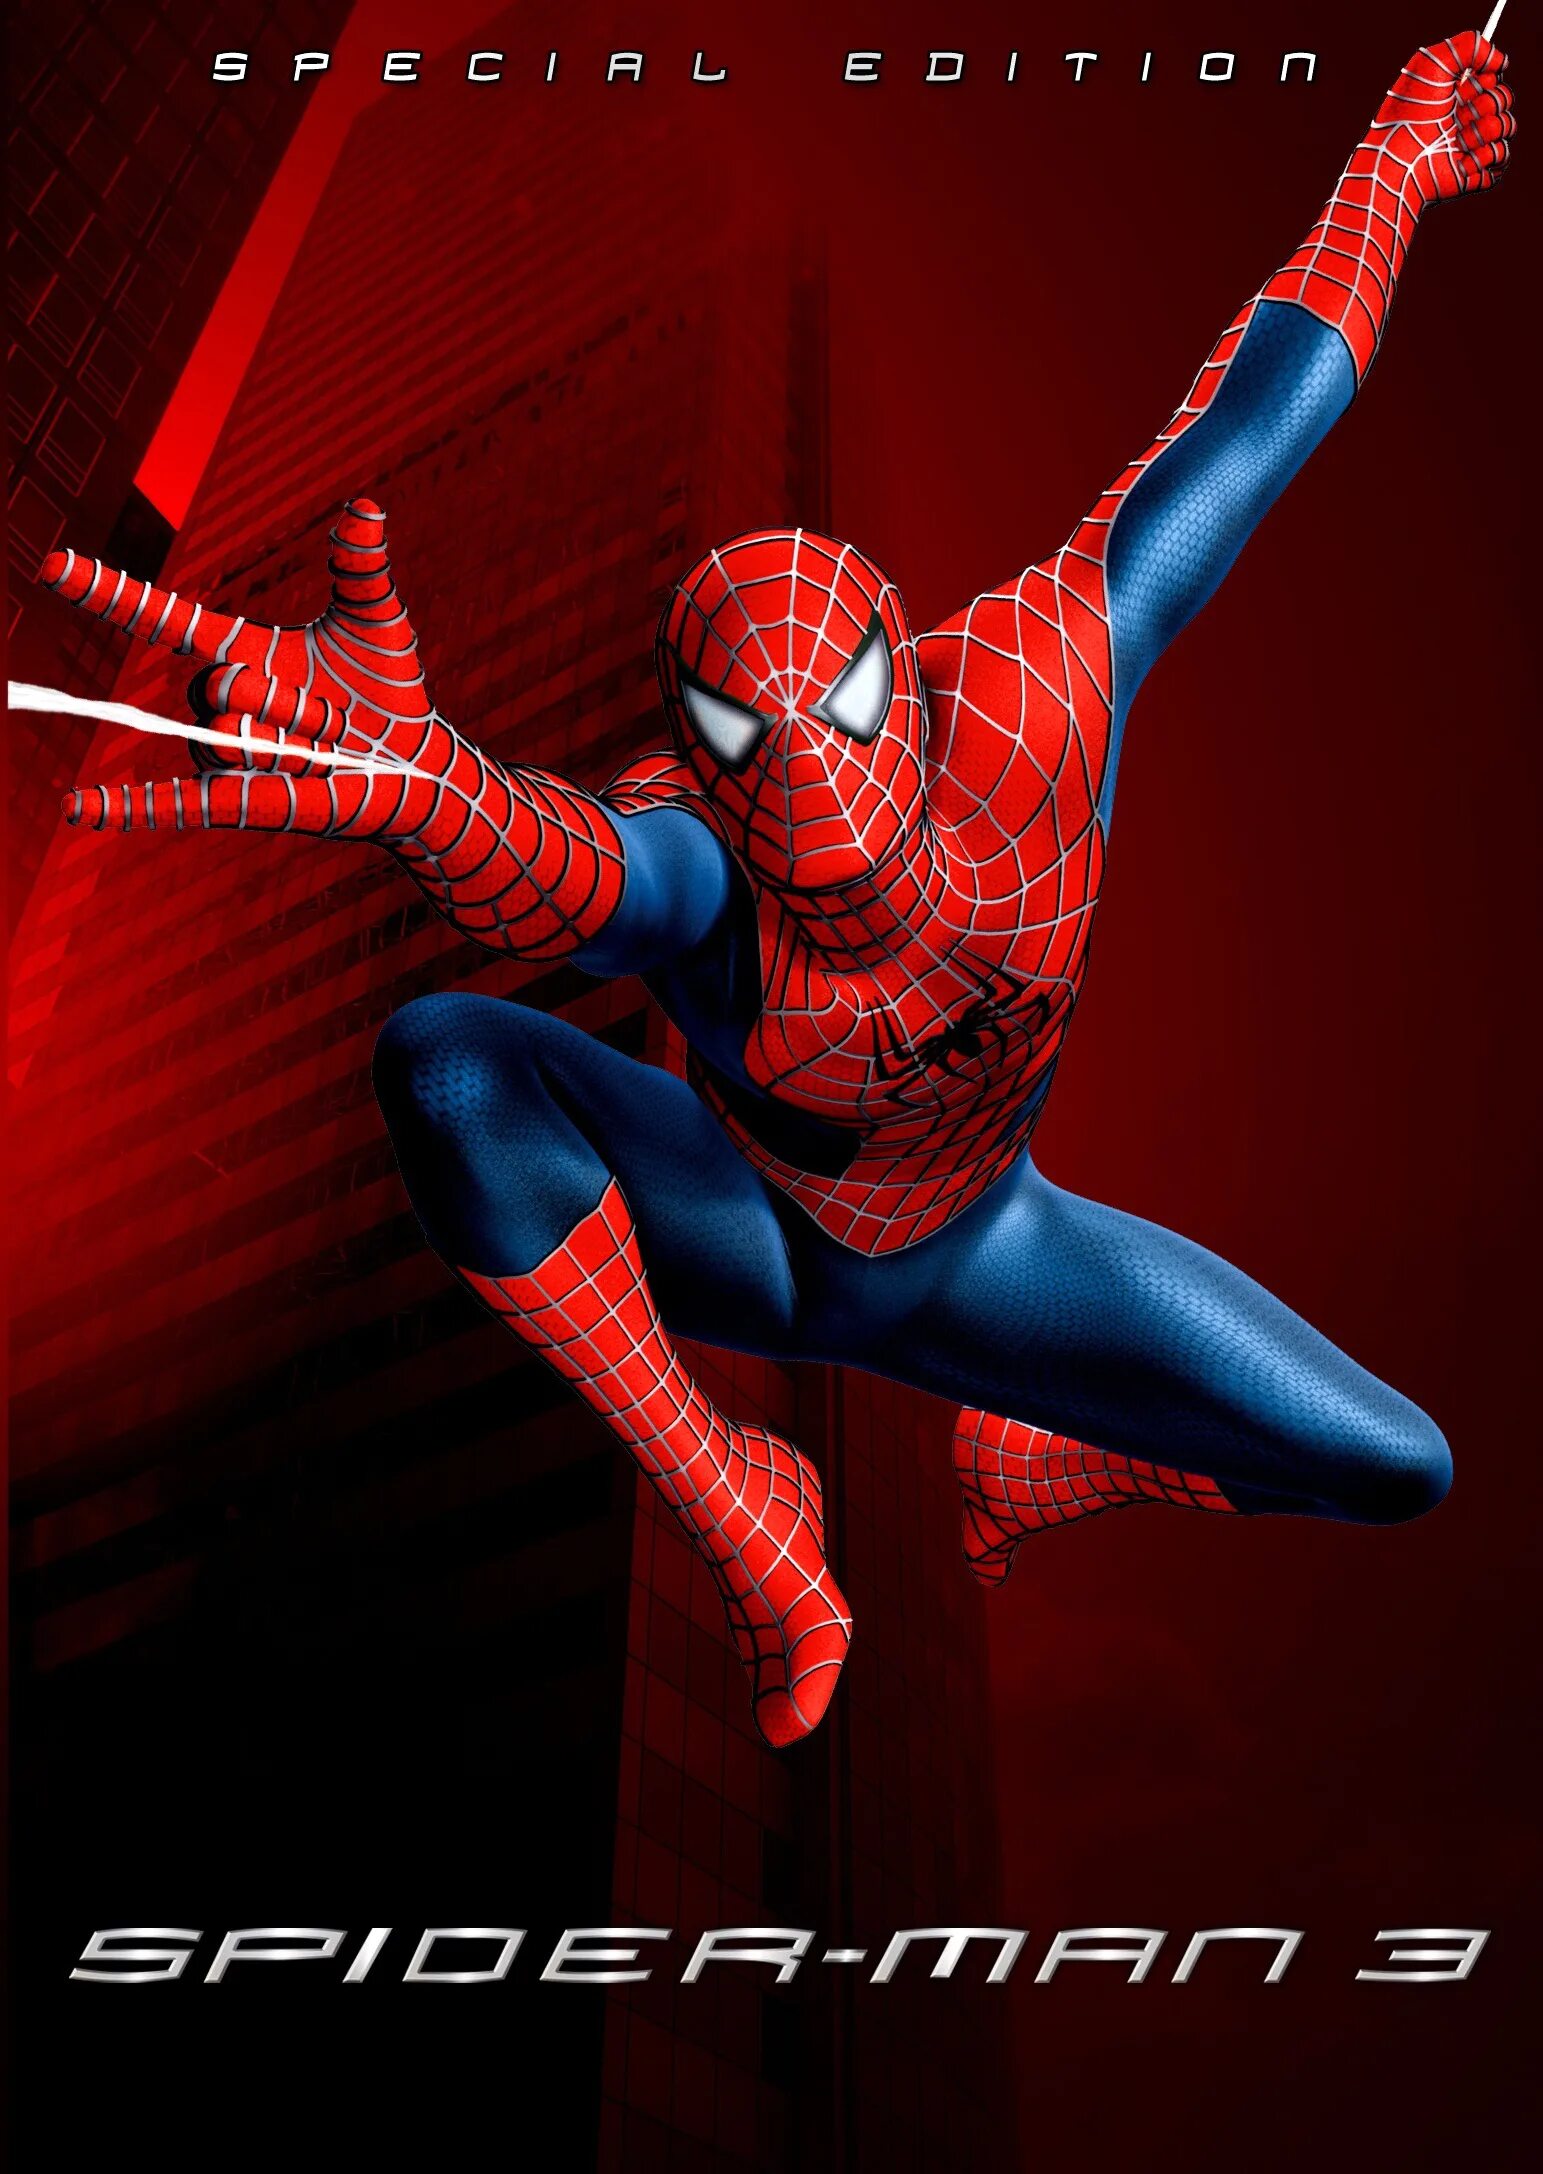 Человек паук 2007. Человек-паук 3 враг в отражении. Человек паук враг в отражении 2007. Человек-паук 3 фильм 2007. Человек-паук 3: враг в отражении 2007 Постер.